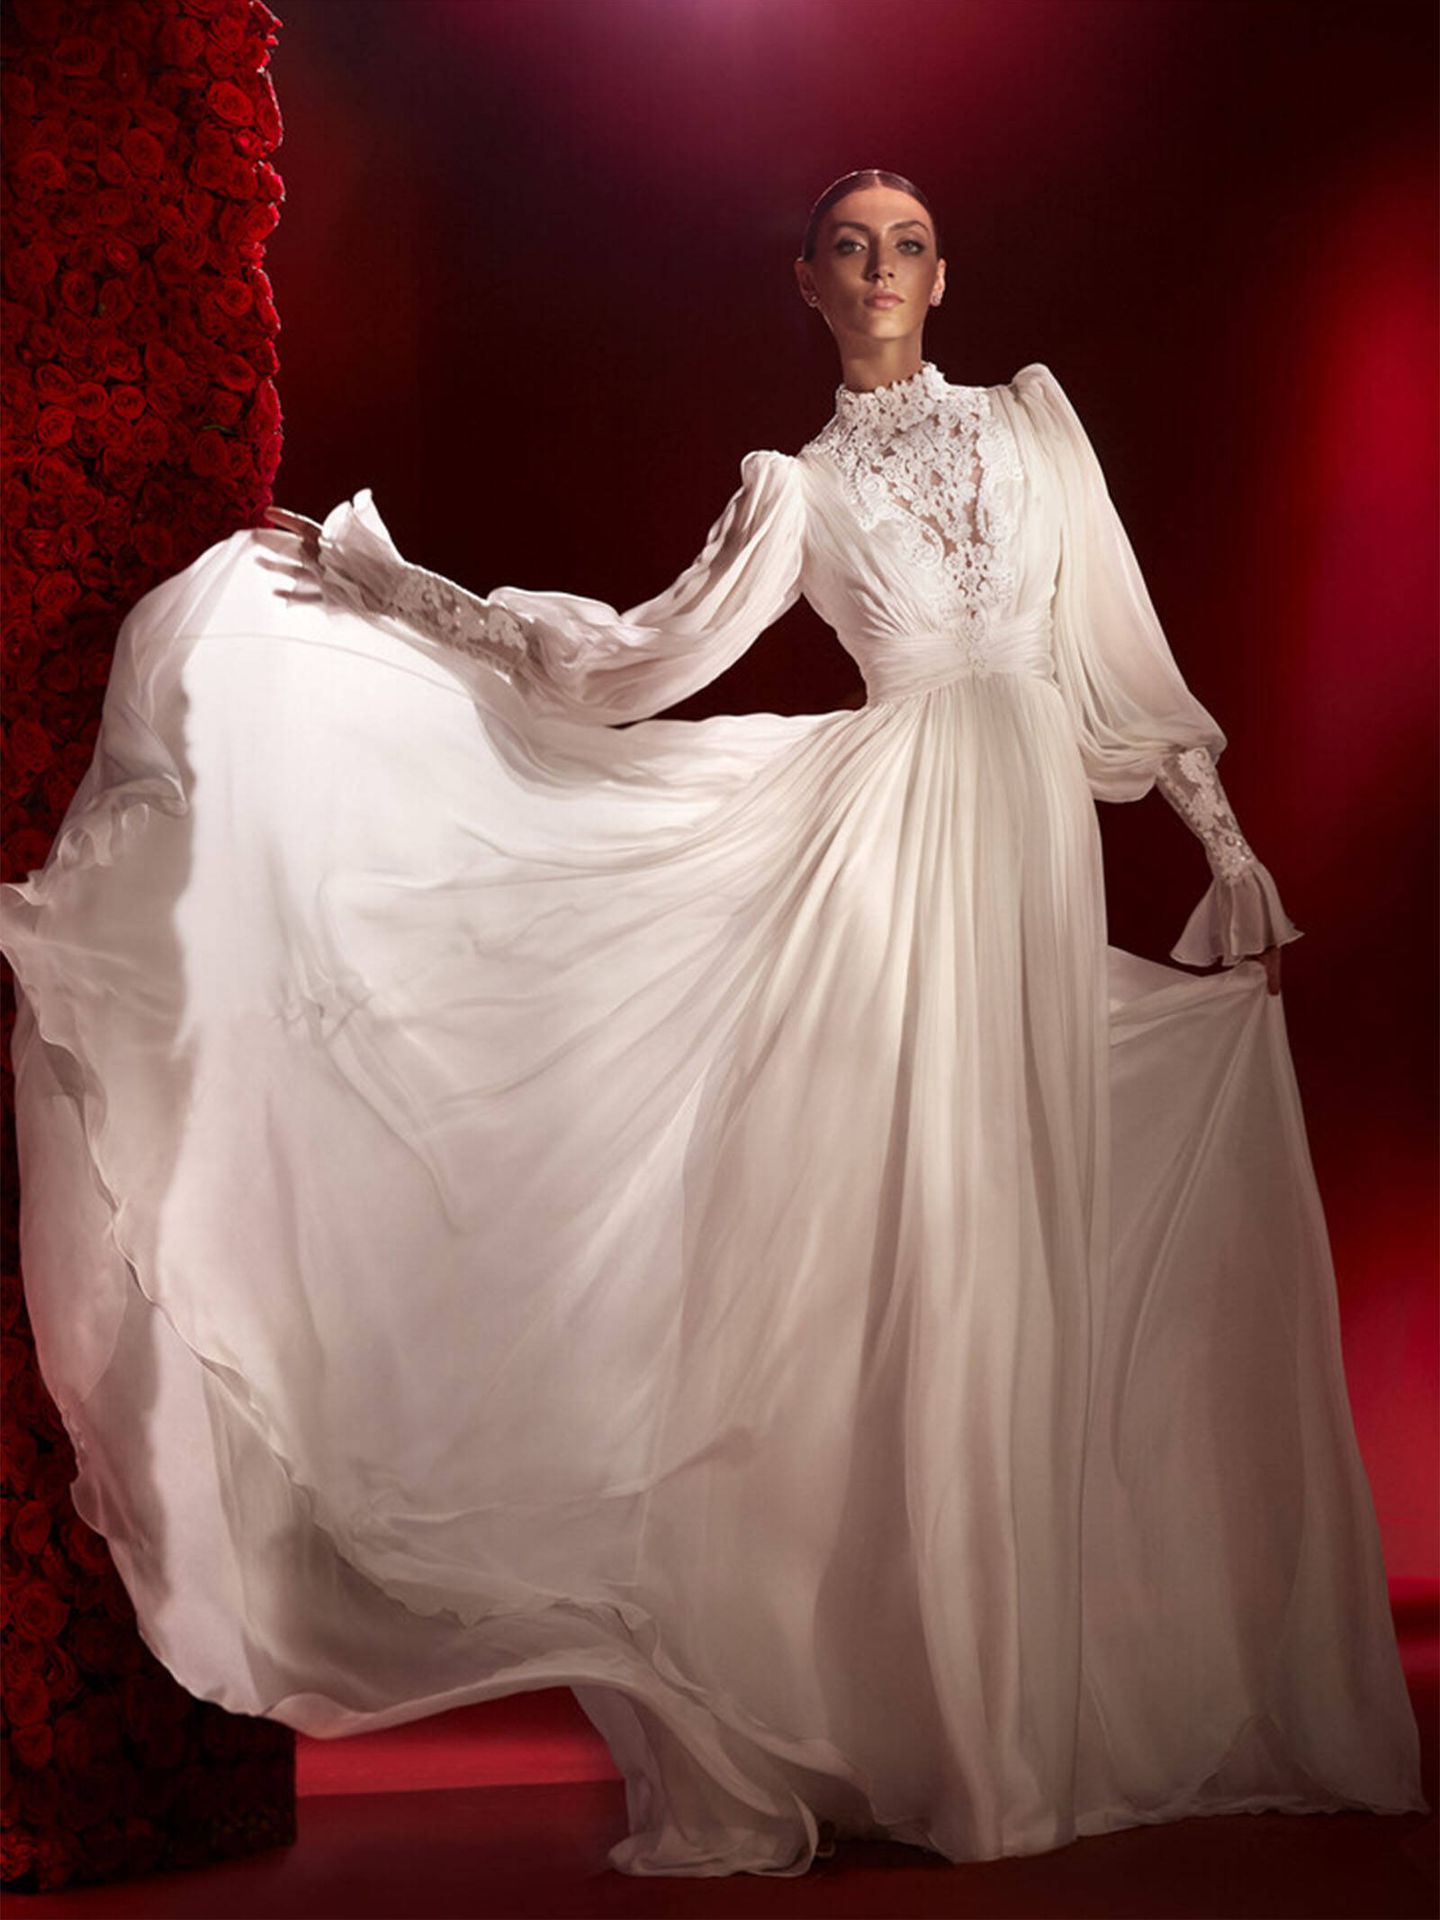 Vestido de novia ‘Pavlova’ de la firma nupcial Pronovias, de inspiración victoriana. (Pronovias/Cortesía)